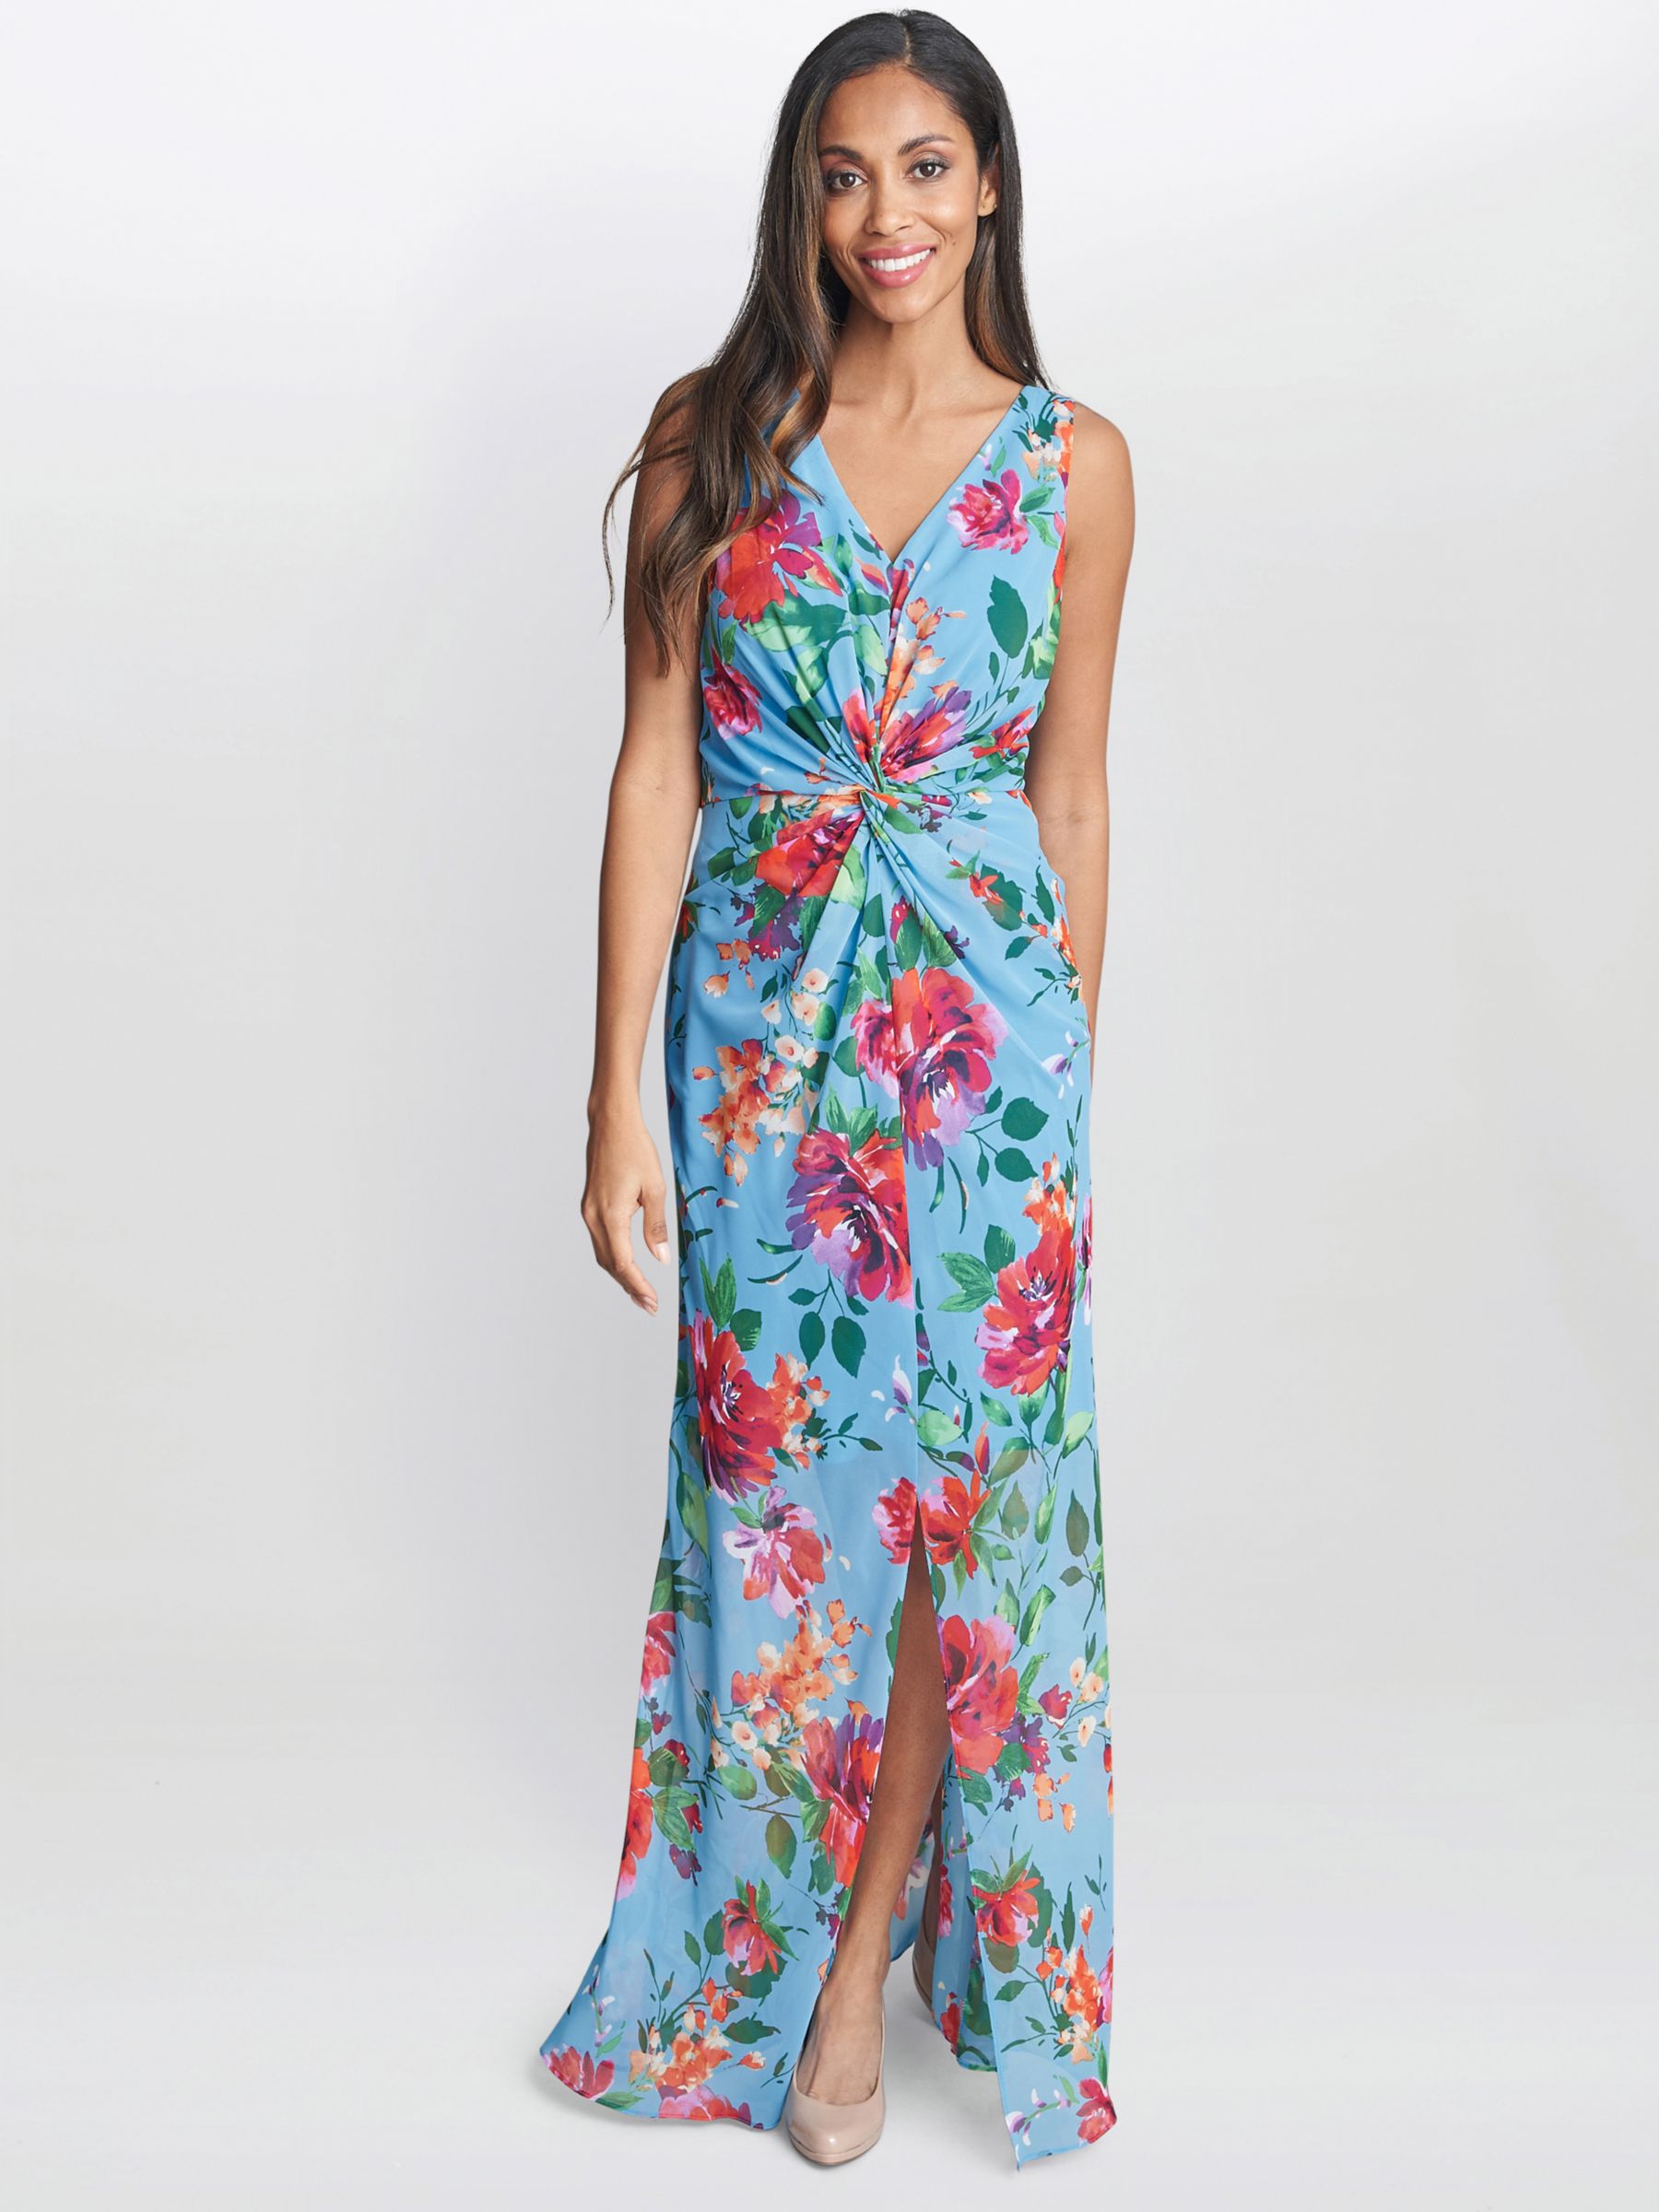 Gina Bacconi Jennifer Floral Twist Detail Maxi Dress, Aqua/Multi, 10